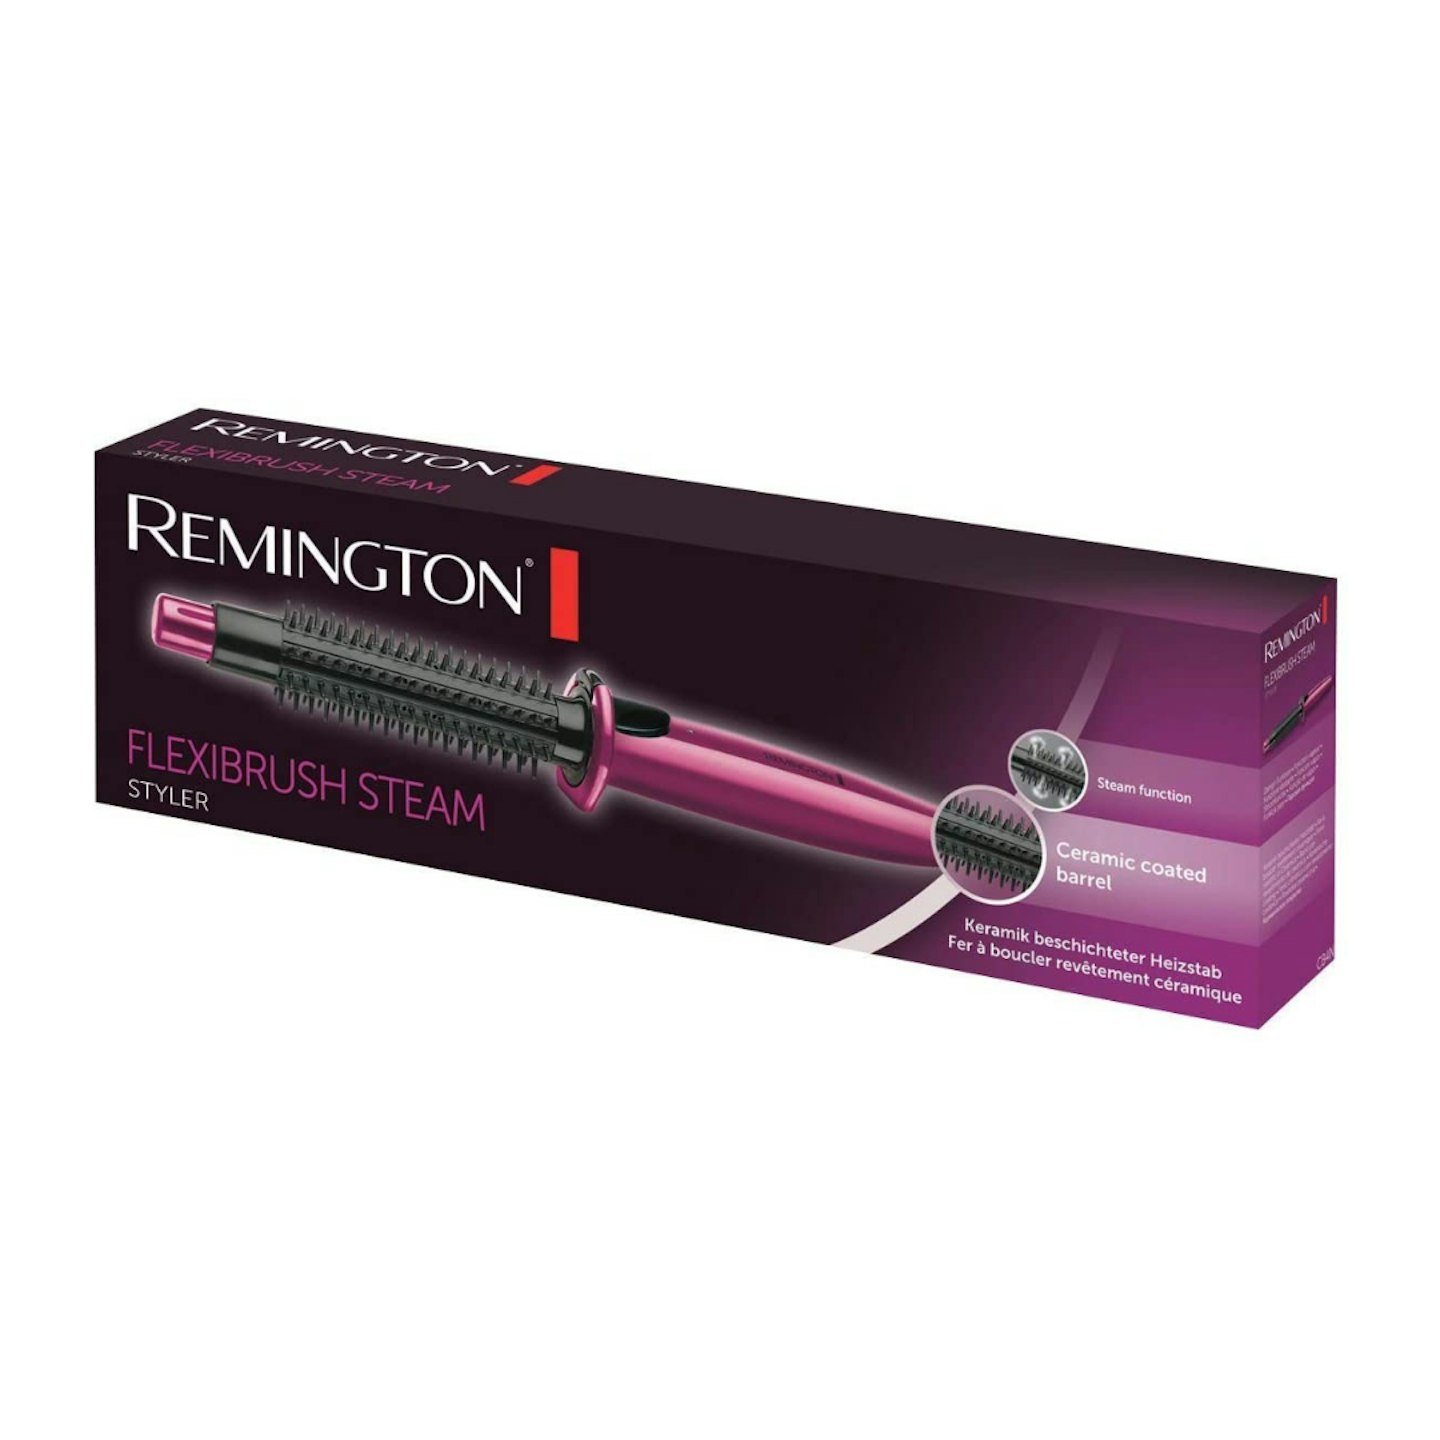 Remington Flexibrush Steam Hot Air Styler Brush